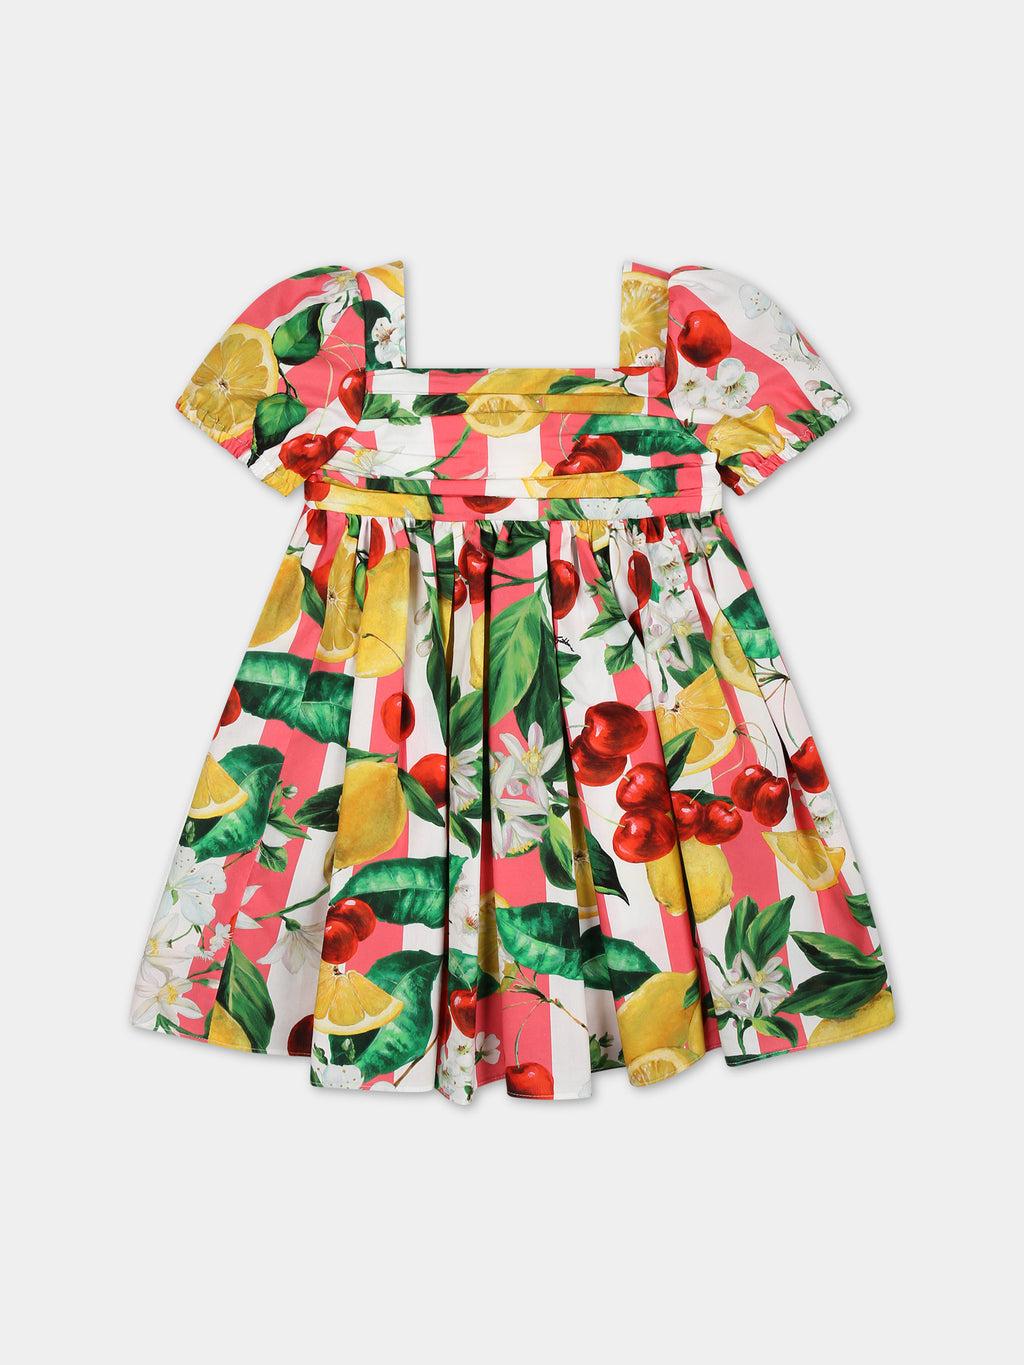 Robe multicolore pour bébé fille avec fleurs et fruits all-over